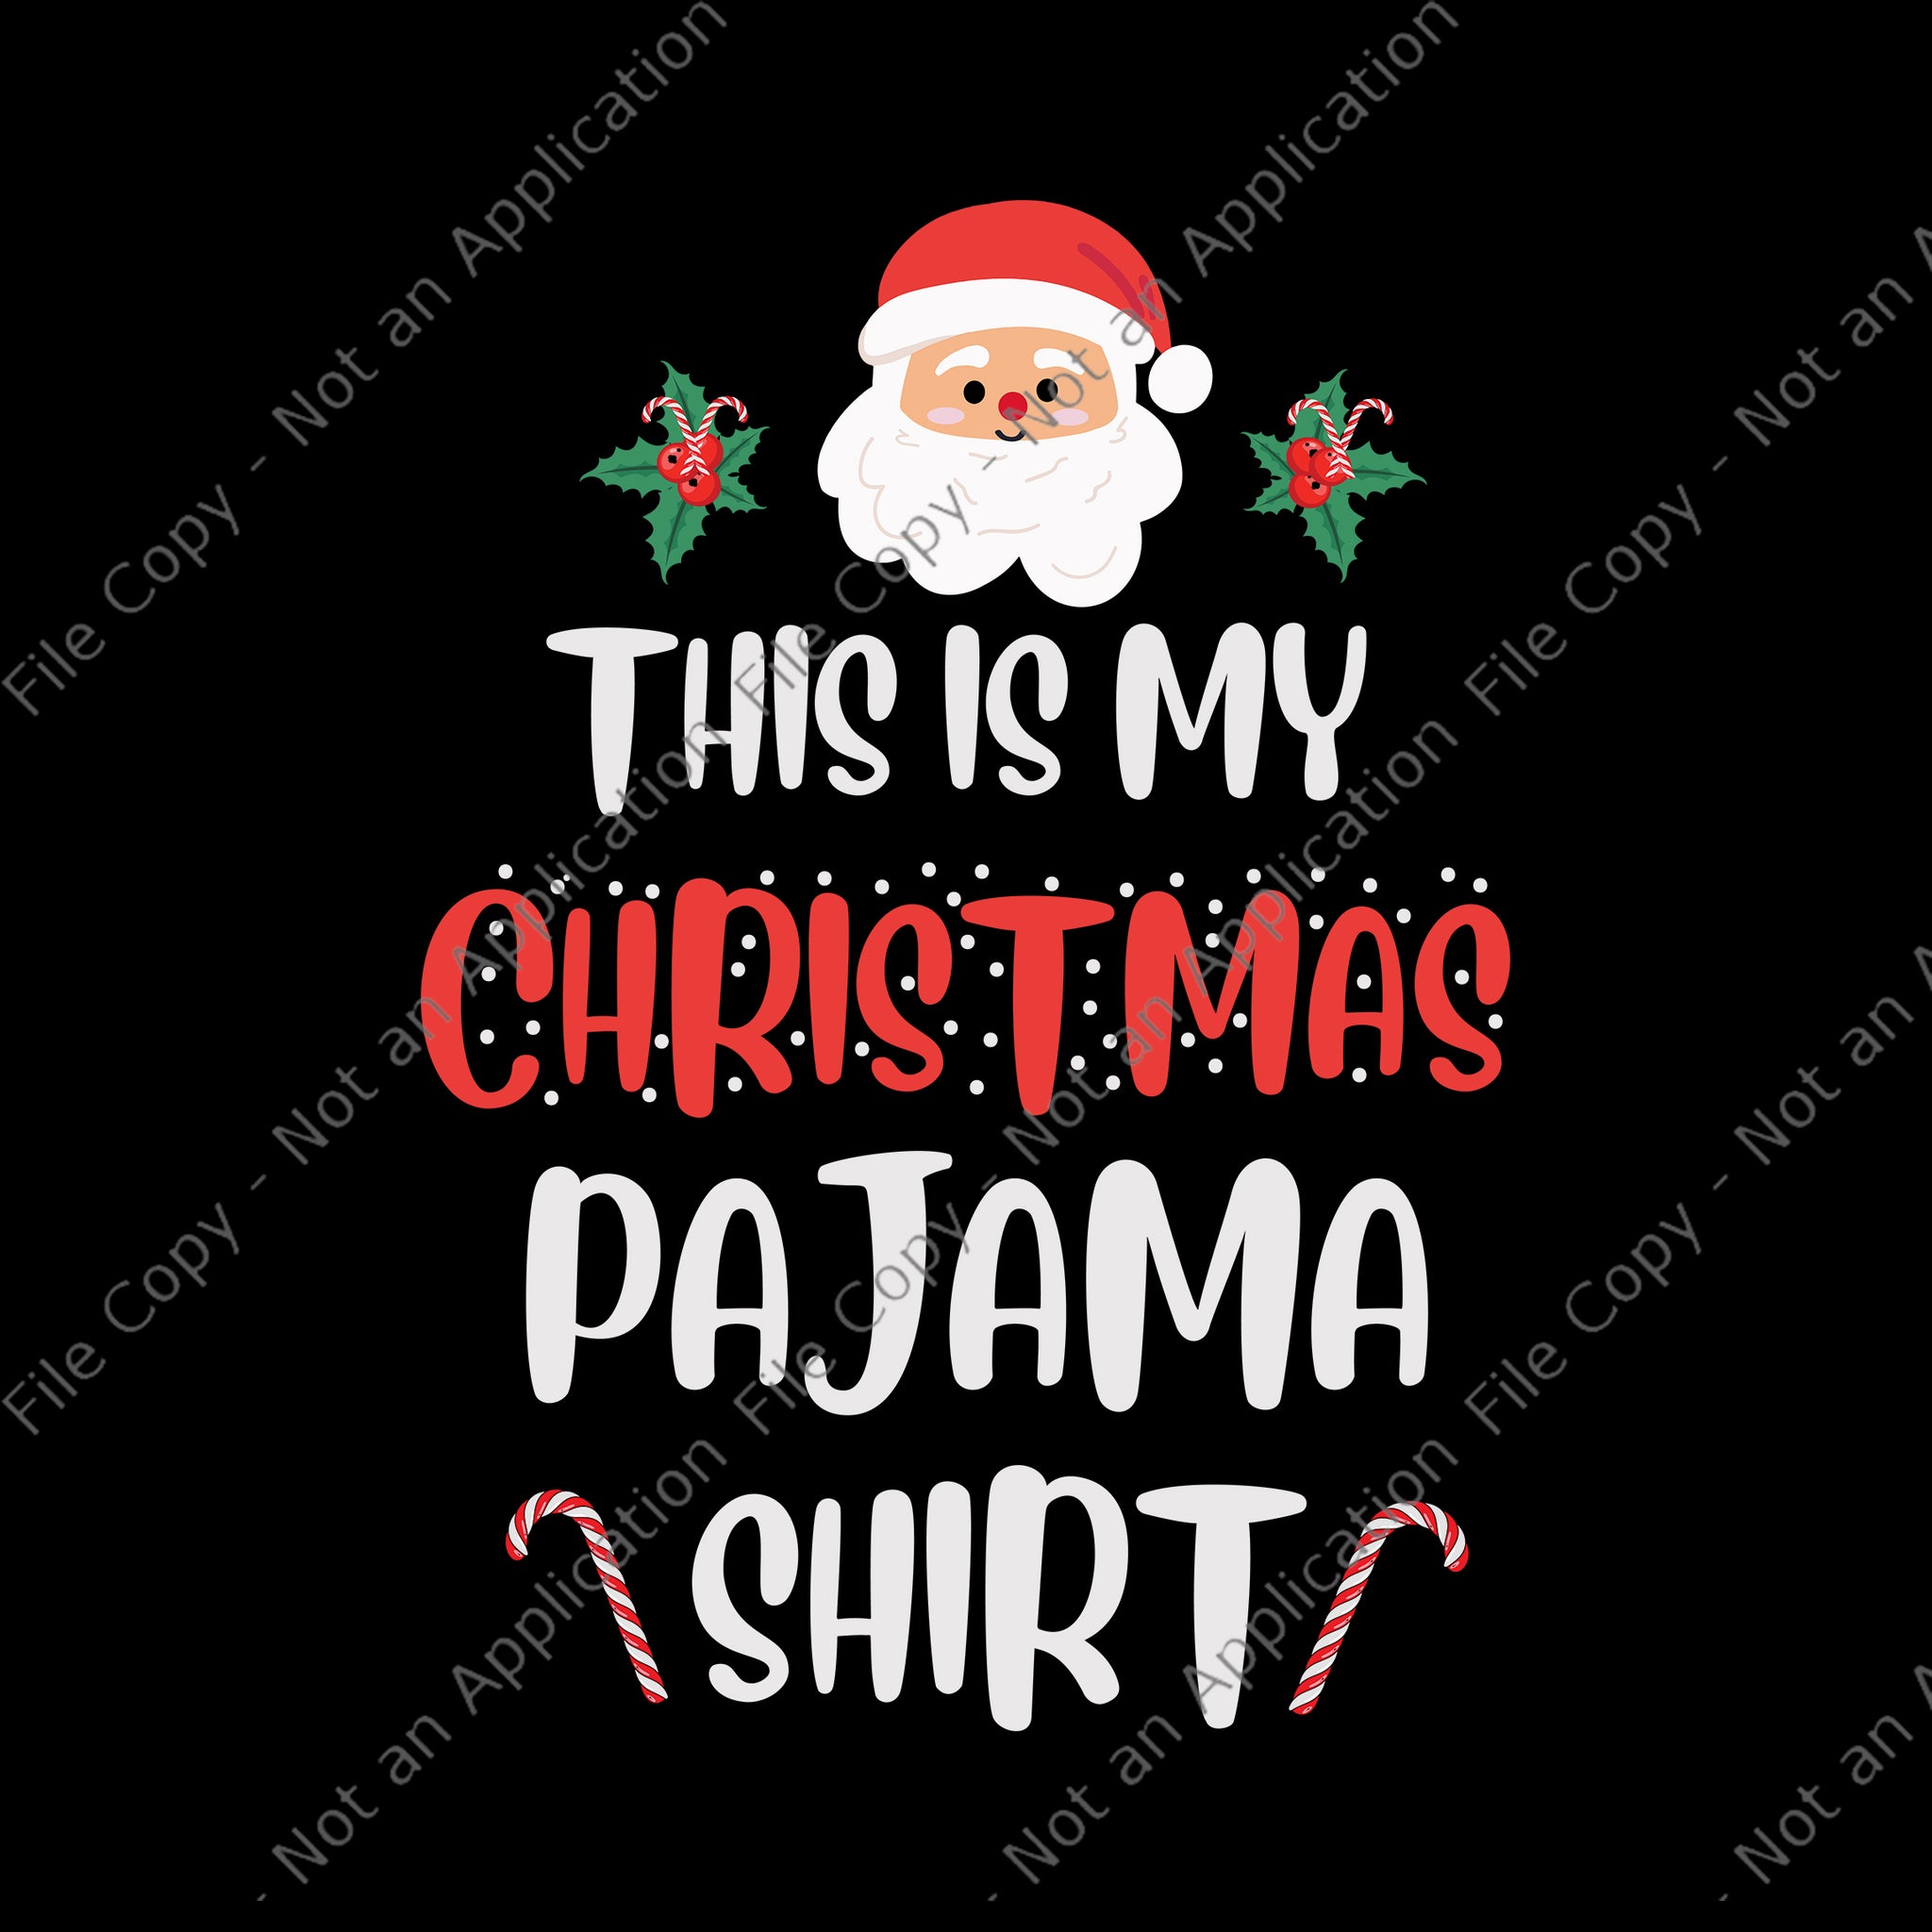 This Is My Christmas Pajama Svg, Christmas Pajama Svg, Santa Christmas Svg, Christmas Svg, Santa Svg